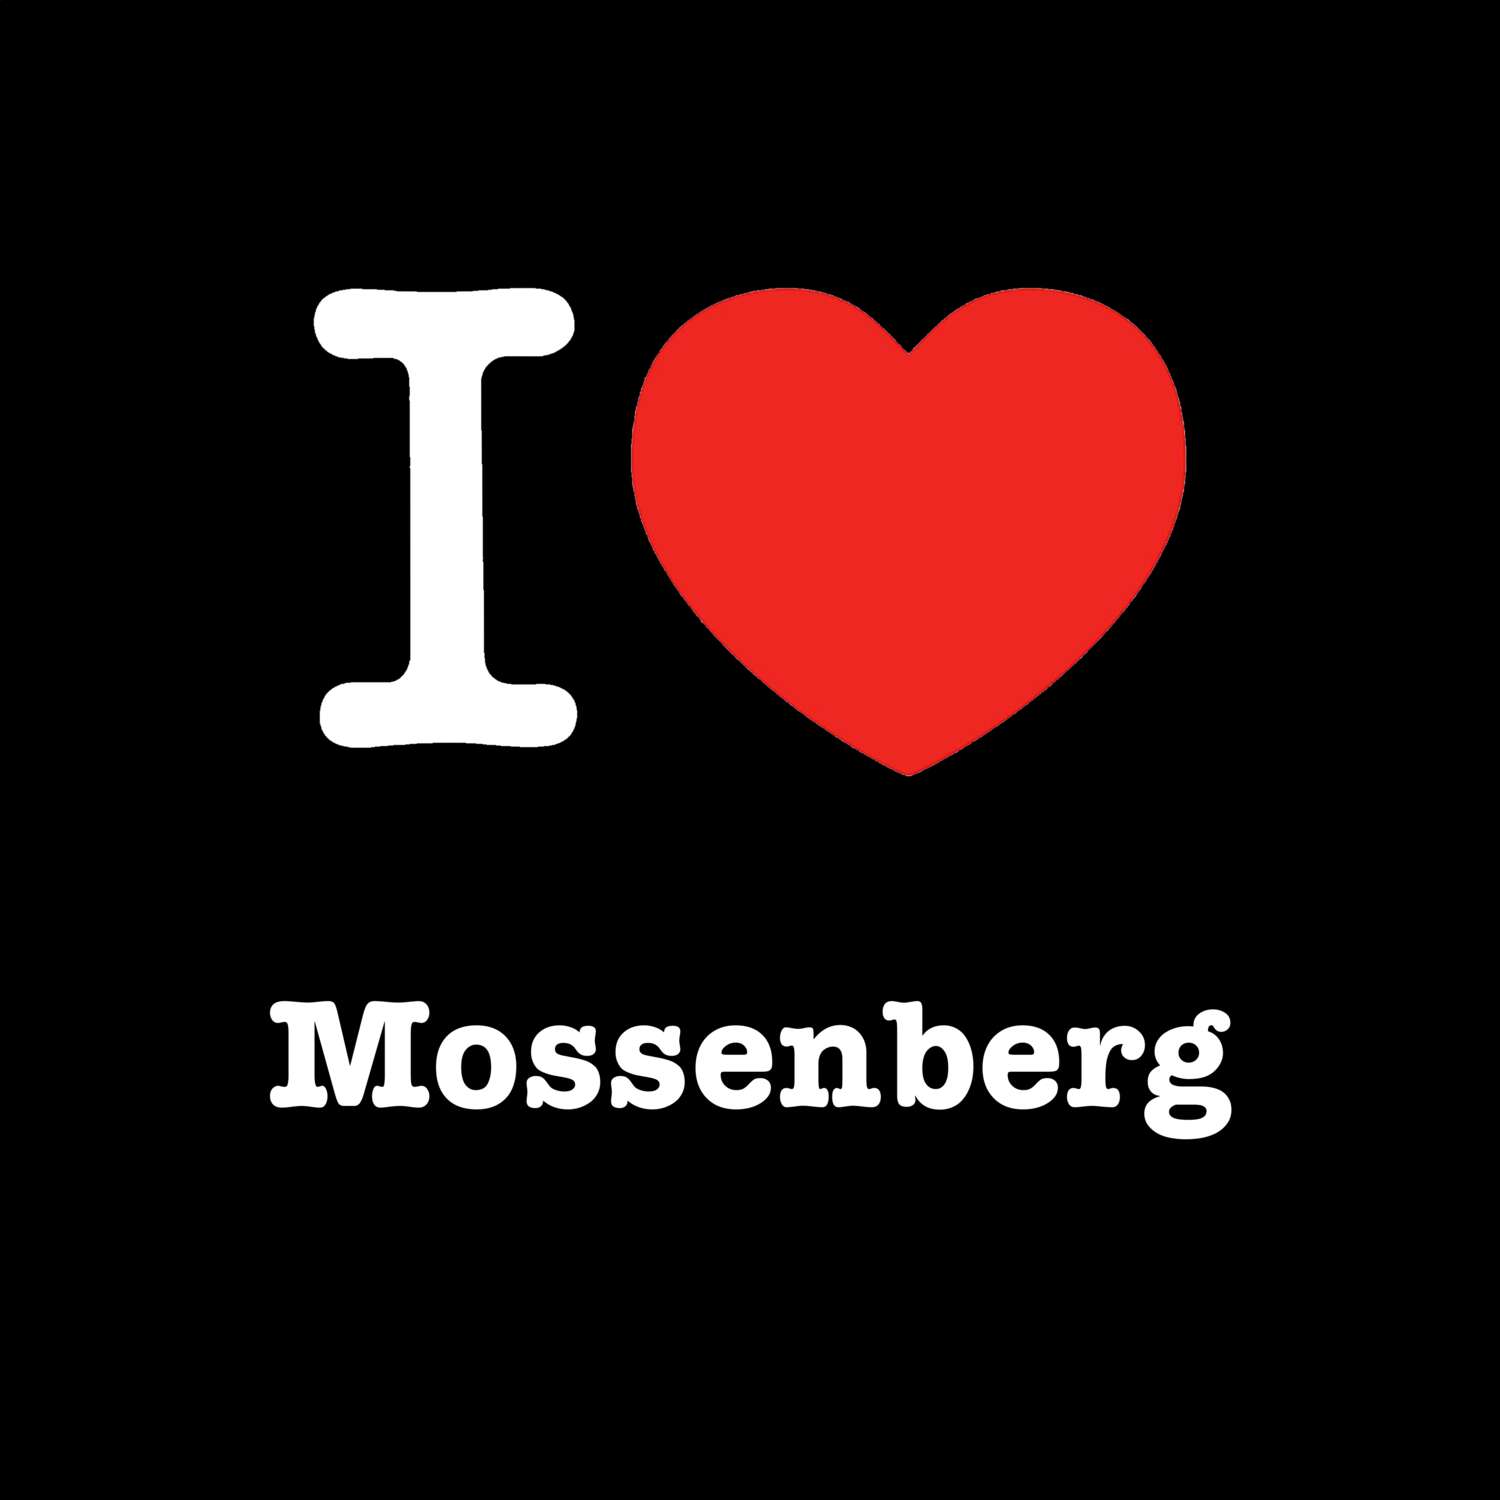 Mossenberg T-Shirt »I love«